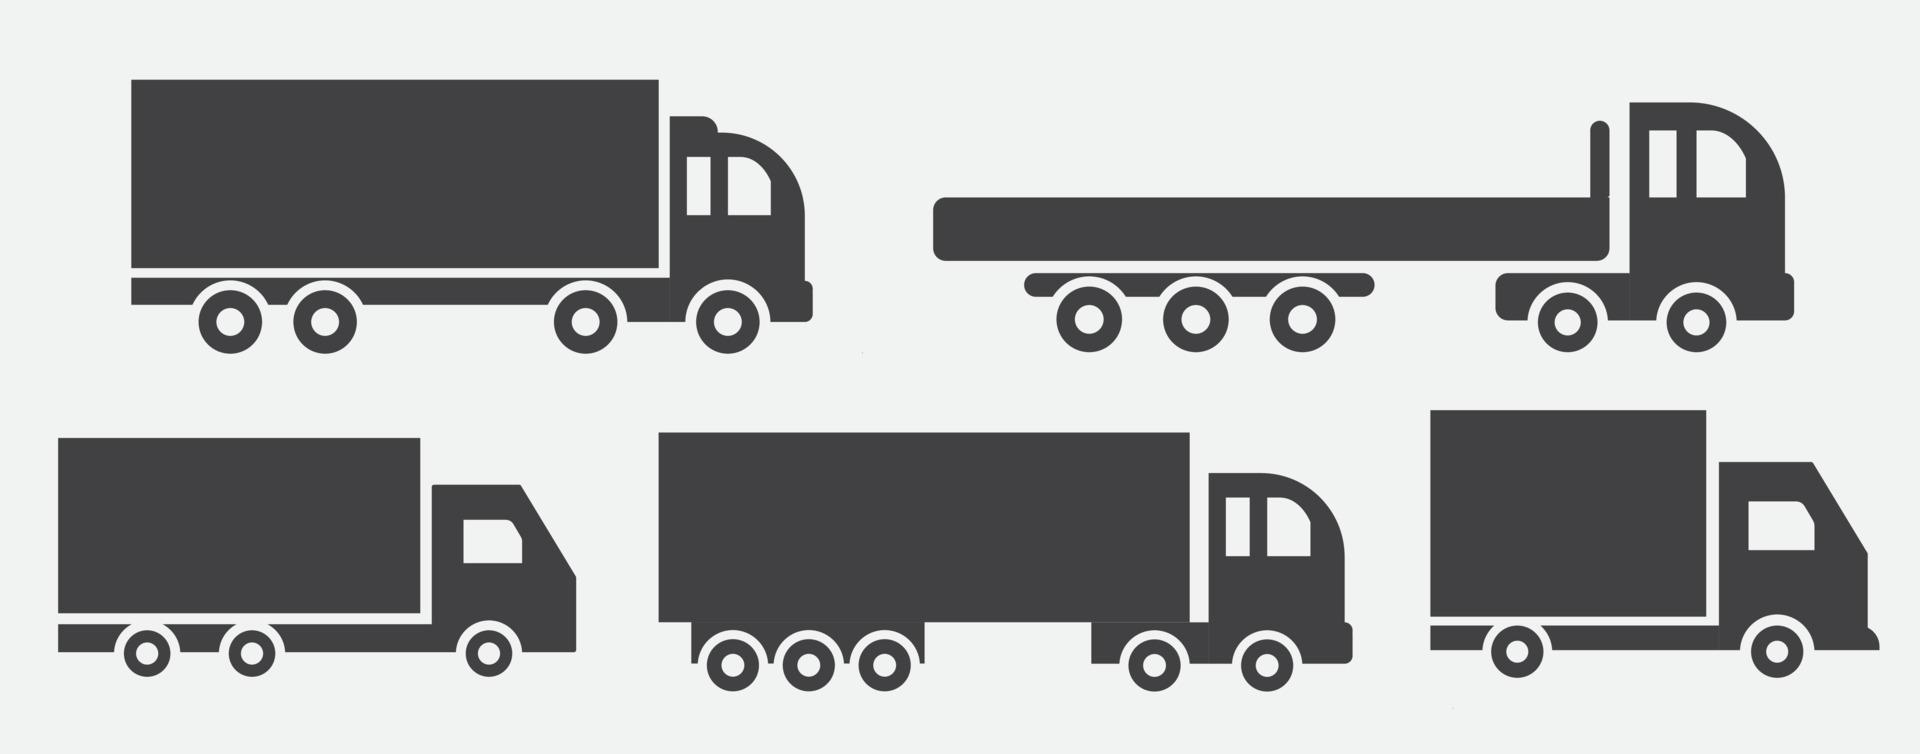 ensemble d'illustration d'icônes vectorielles de camion sur fond blanc vecteur